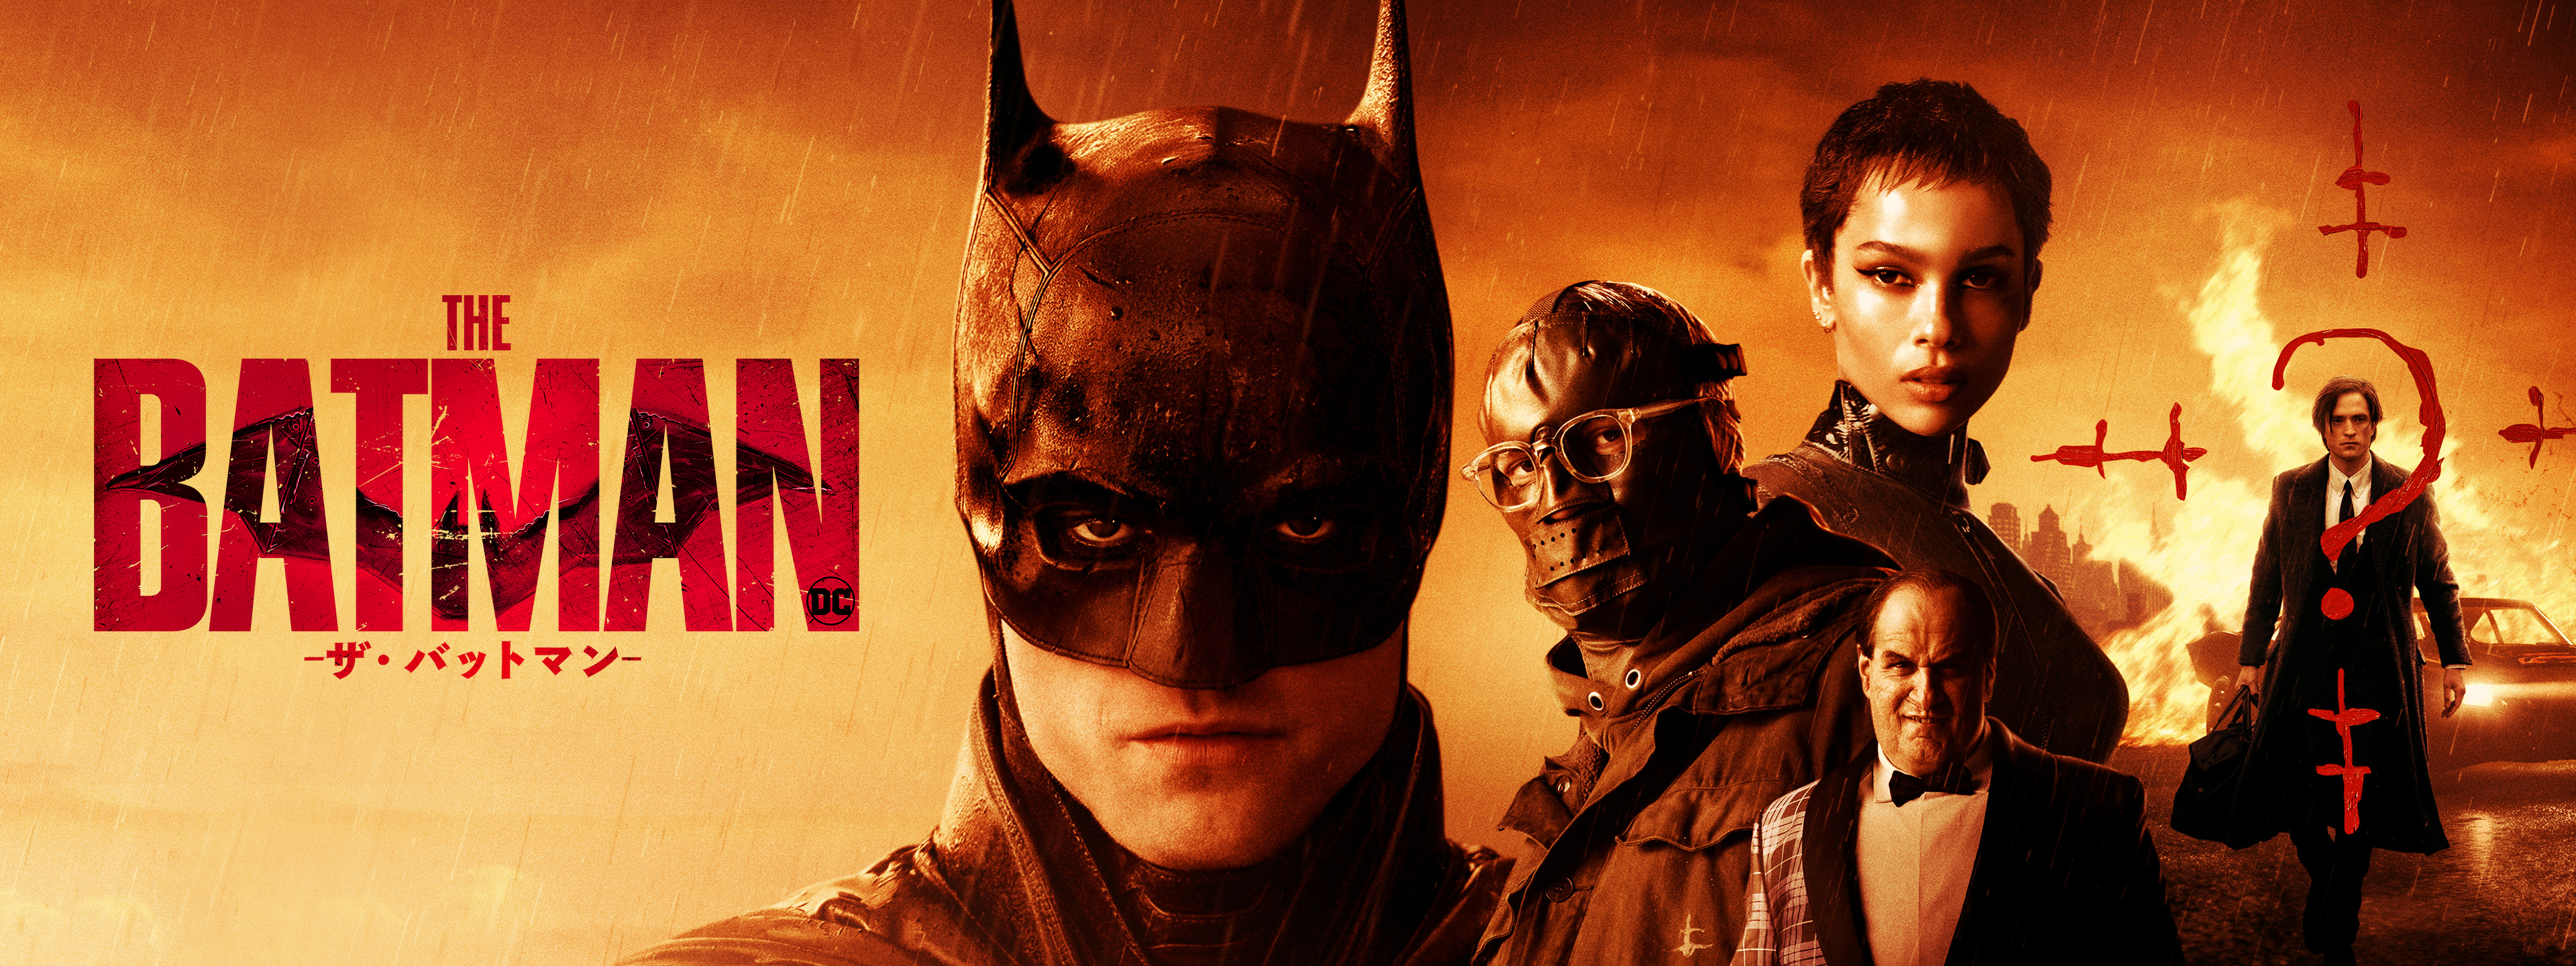 THE BATMAN －ザ・バットマン－ | Hulu(フールー)